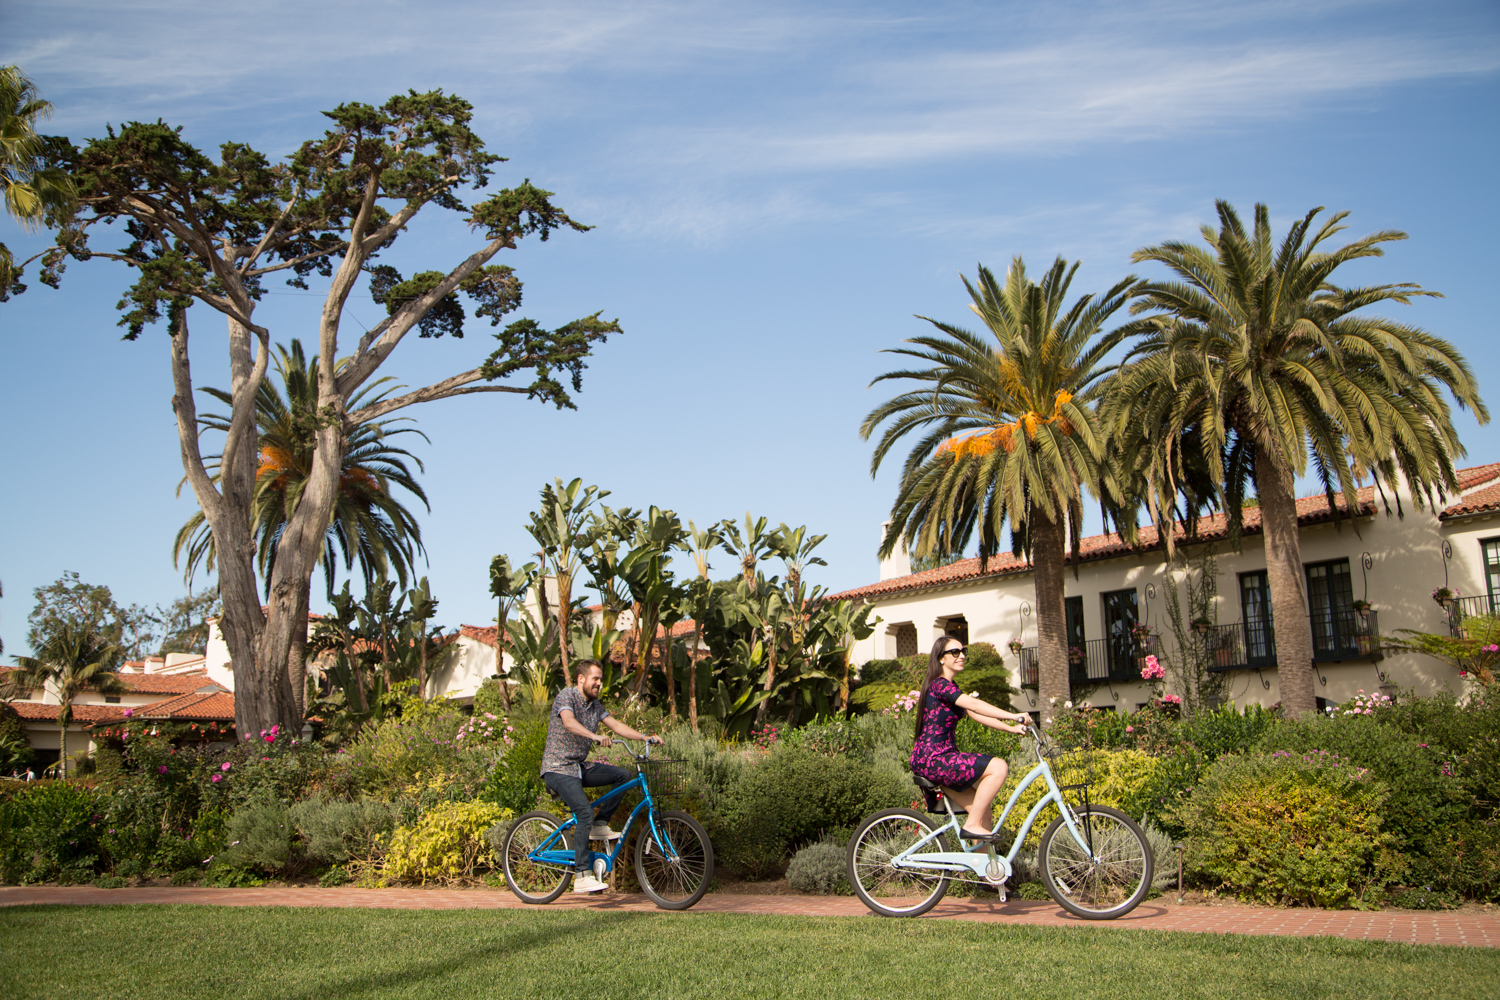 Four Seasons The Biltmore Santa Barbara Bike Rentals Review